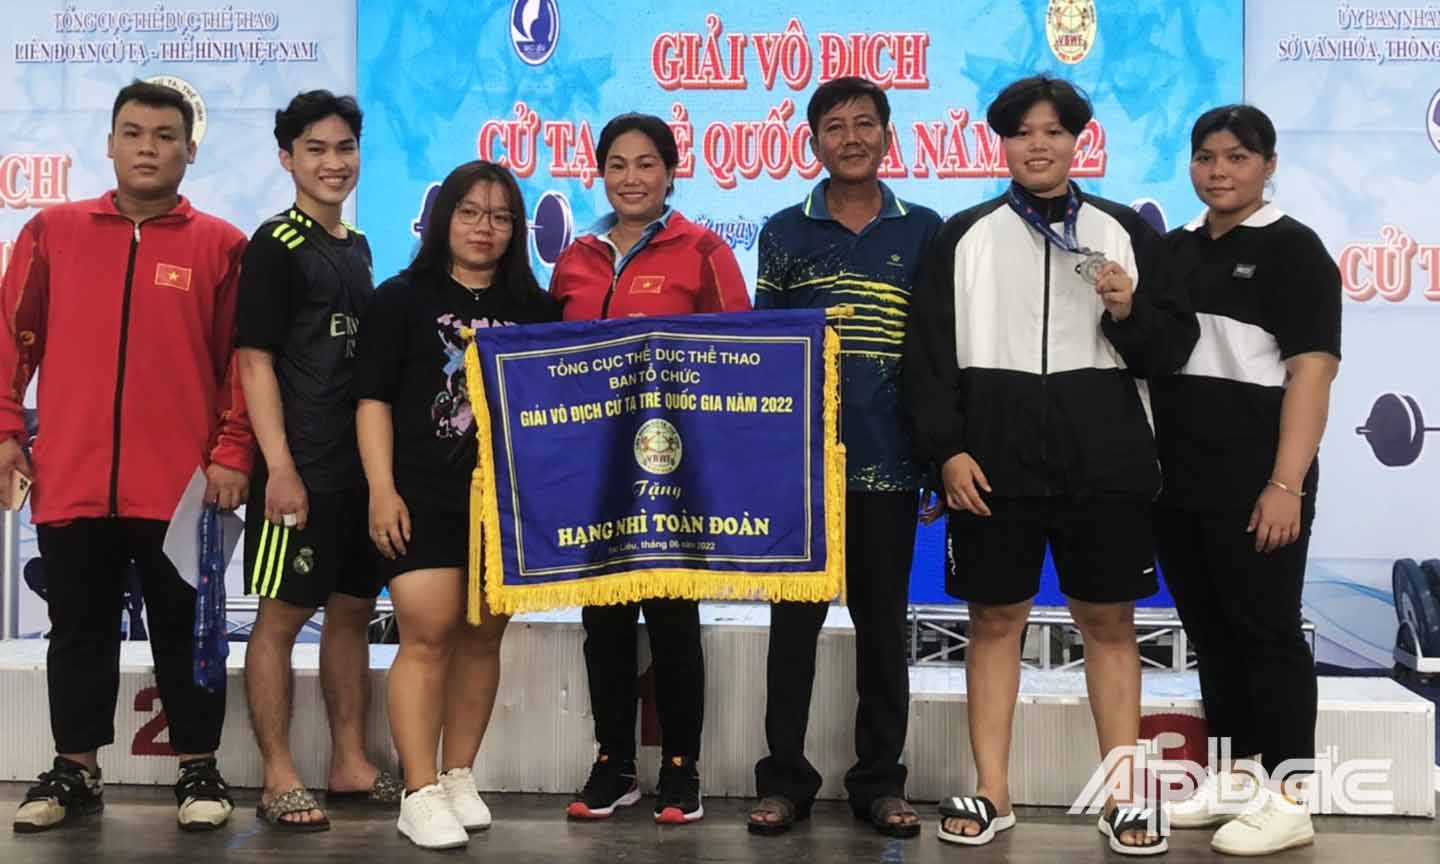 Đội Cử tạ Tiền Giang xuất sắc đoạt hạng Nhì toàn đoàn.